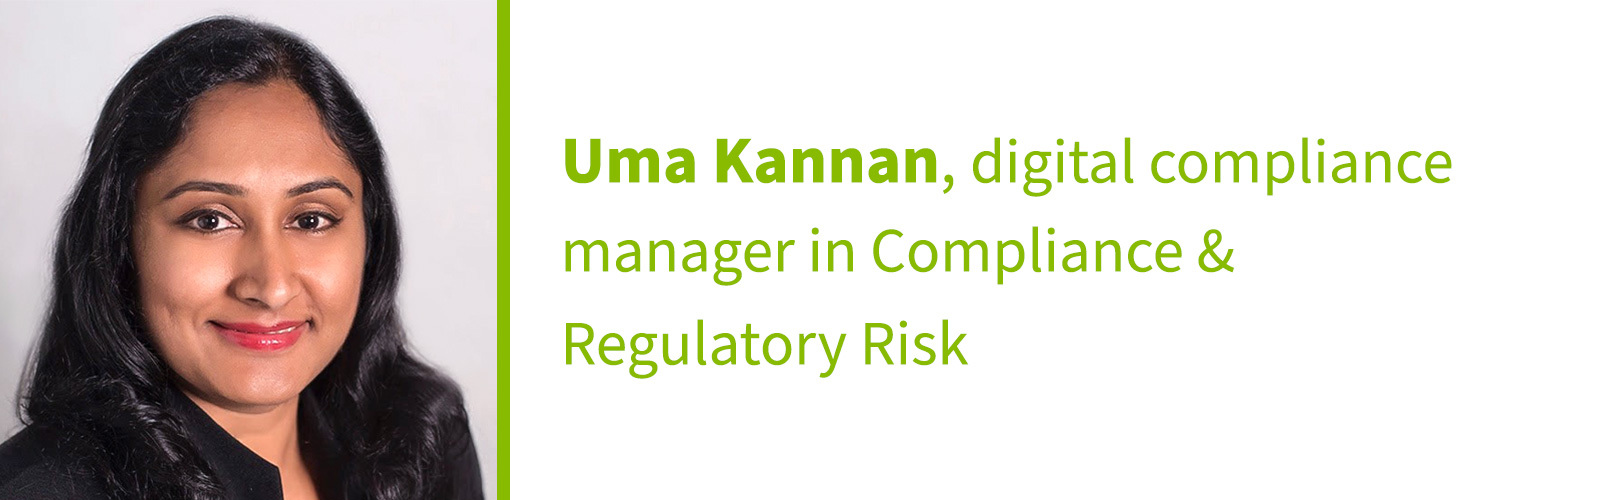 Uma Kannan, digital compliance manager in Compliance & Regulatory Risk